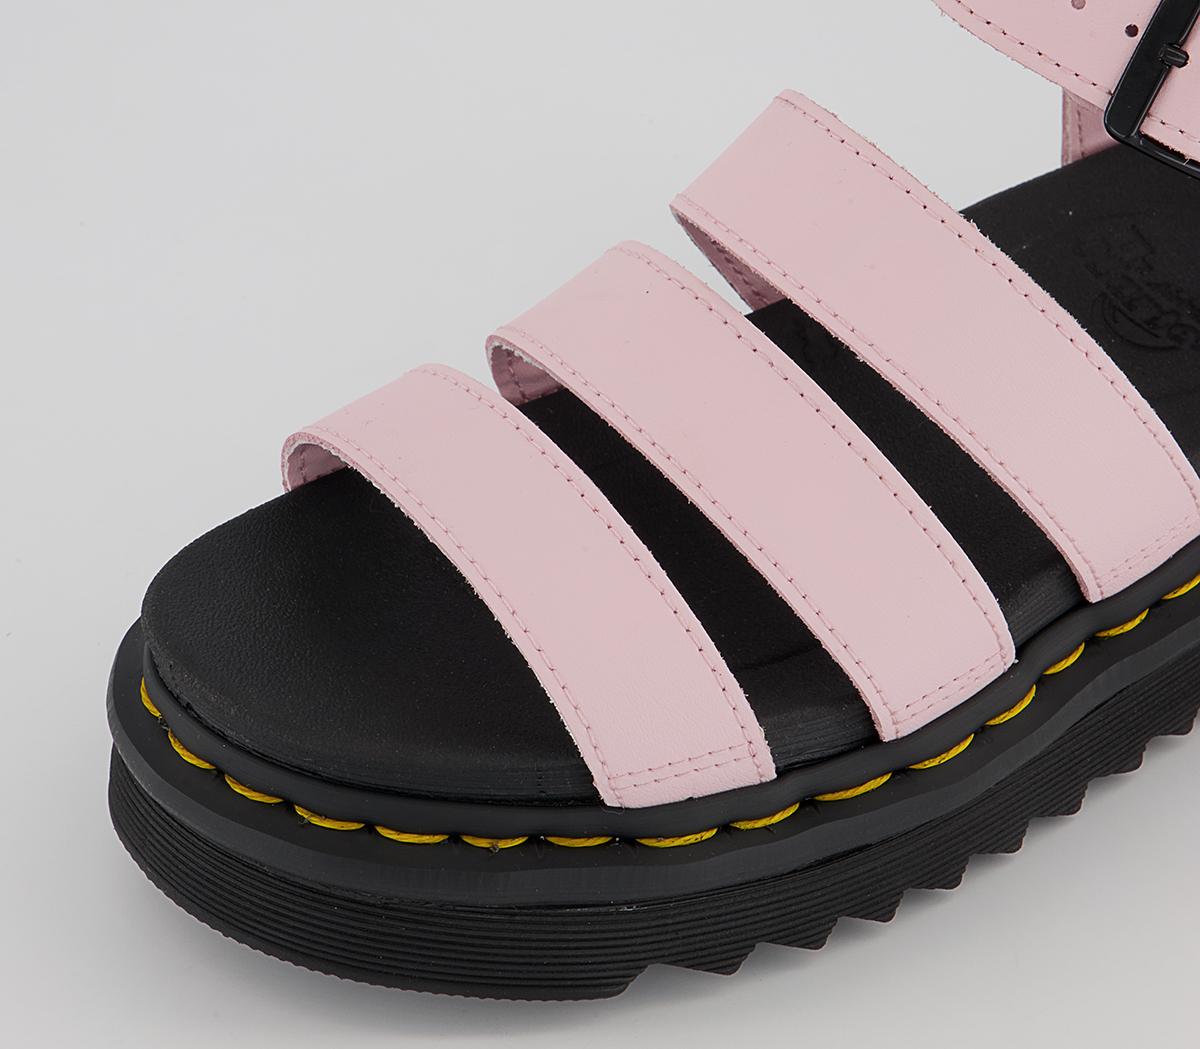 Dr. Martens Blaire Sandals Chalk Pink - Women’s Sandals